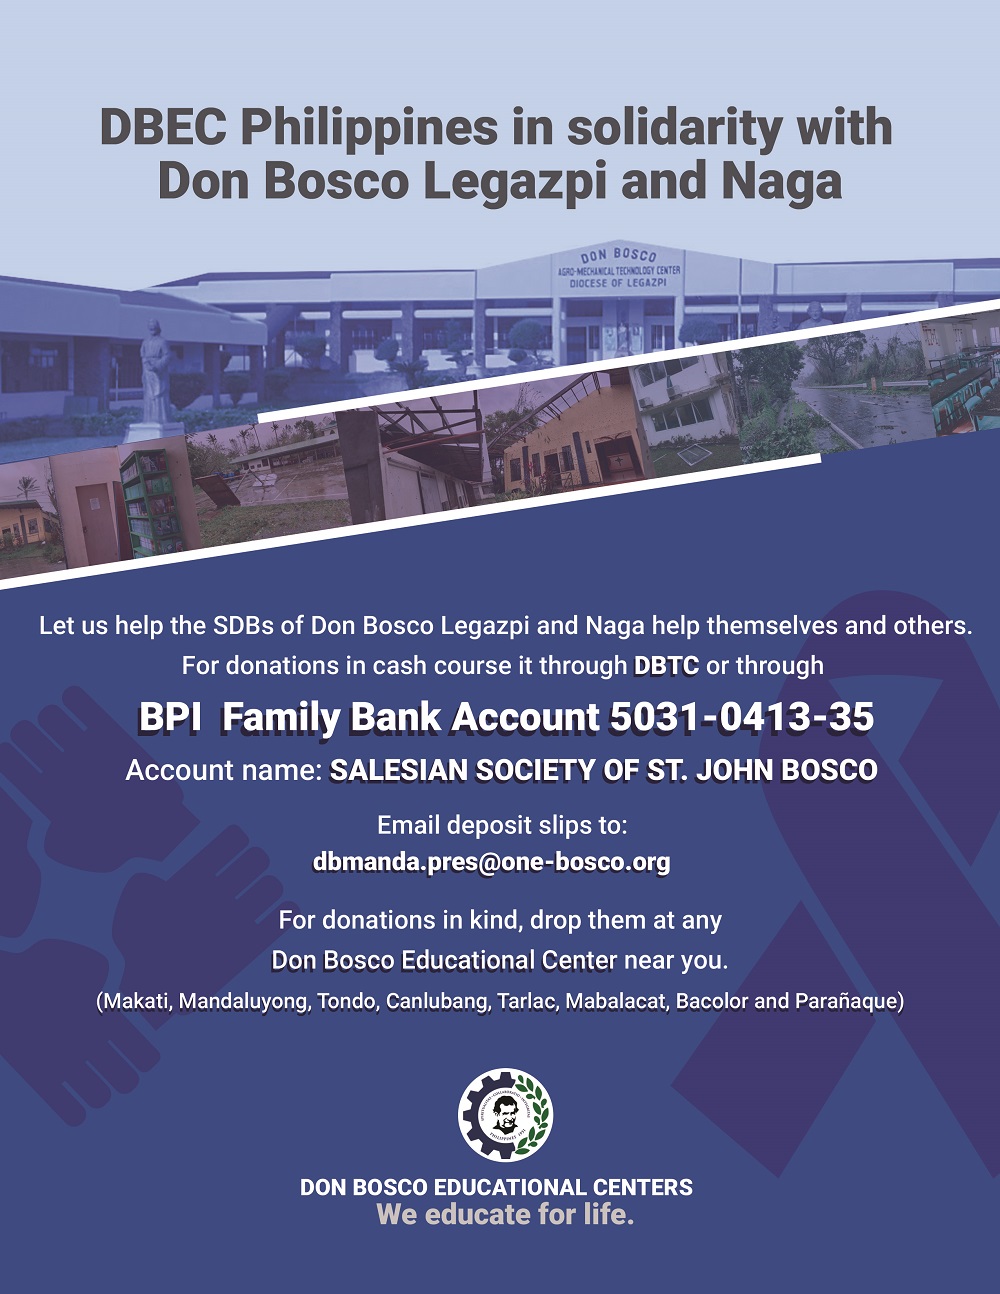 DB-Legazpi-and-Naga-help 2019.jpg